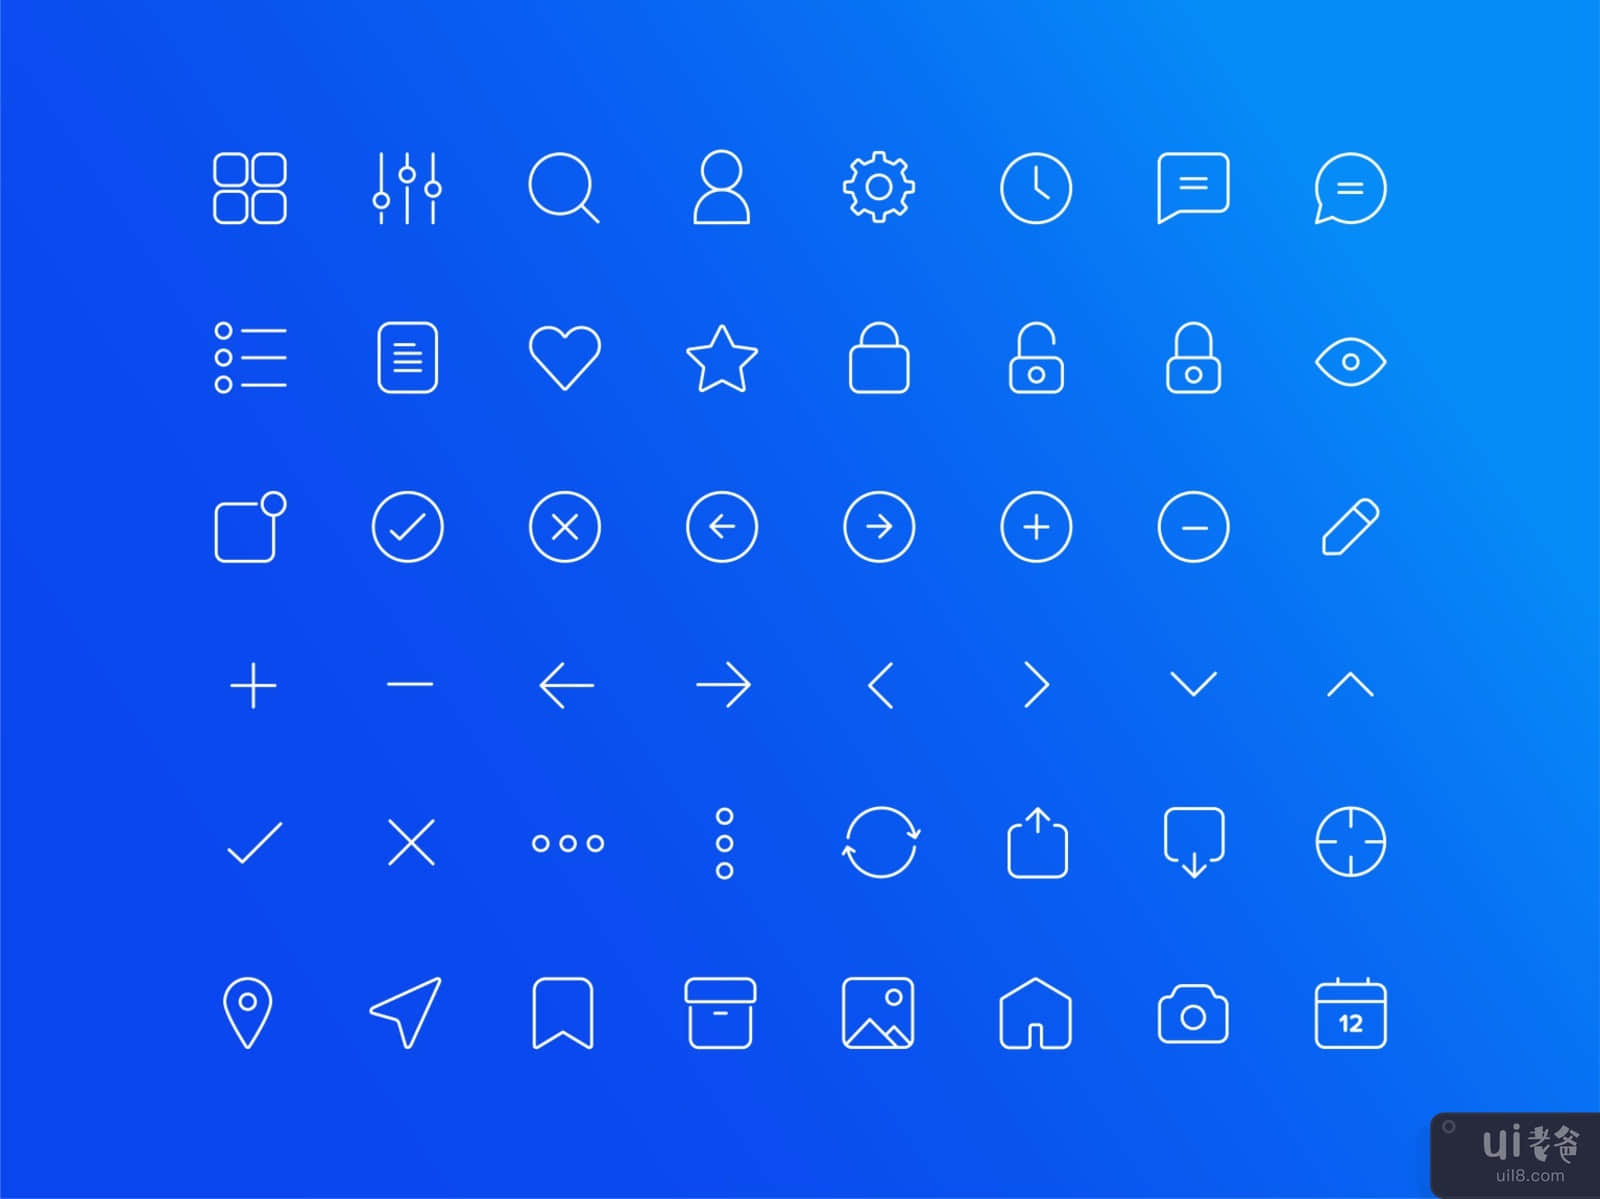 Basic Icons Set